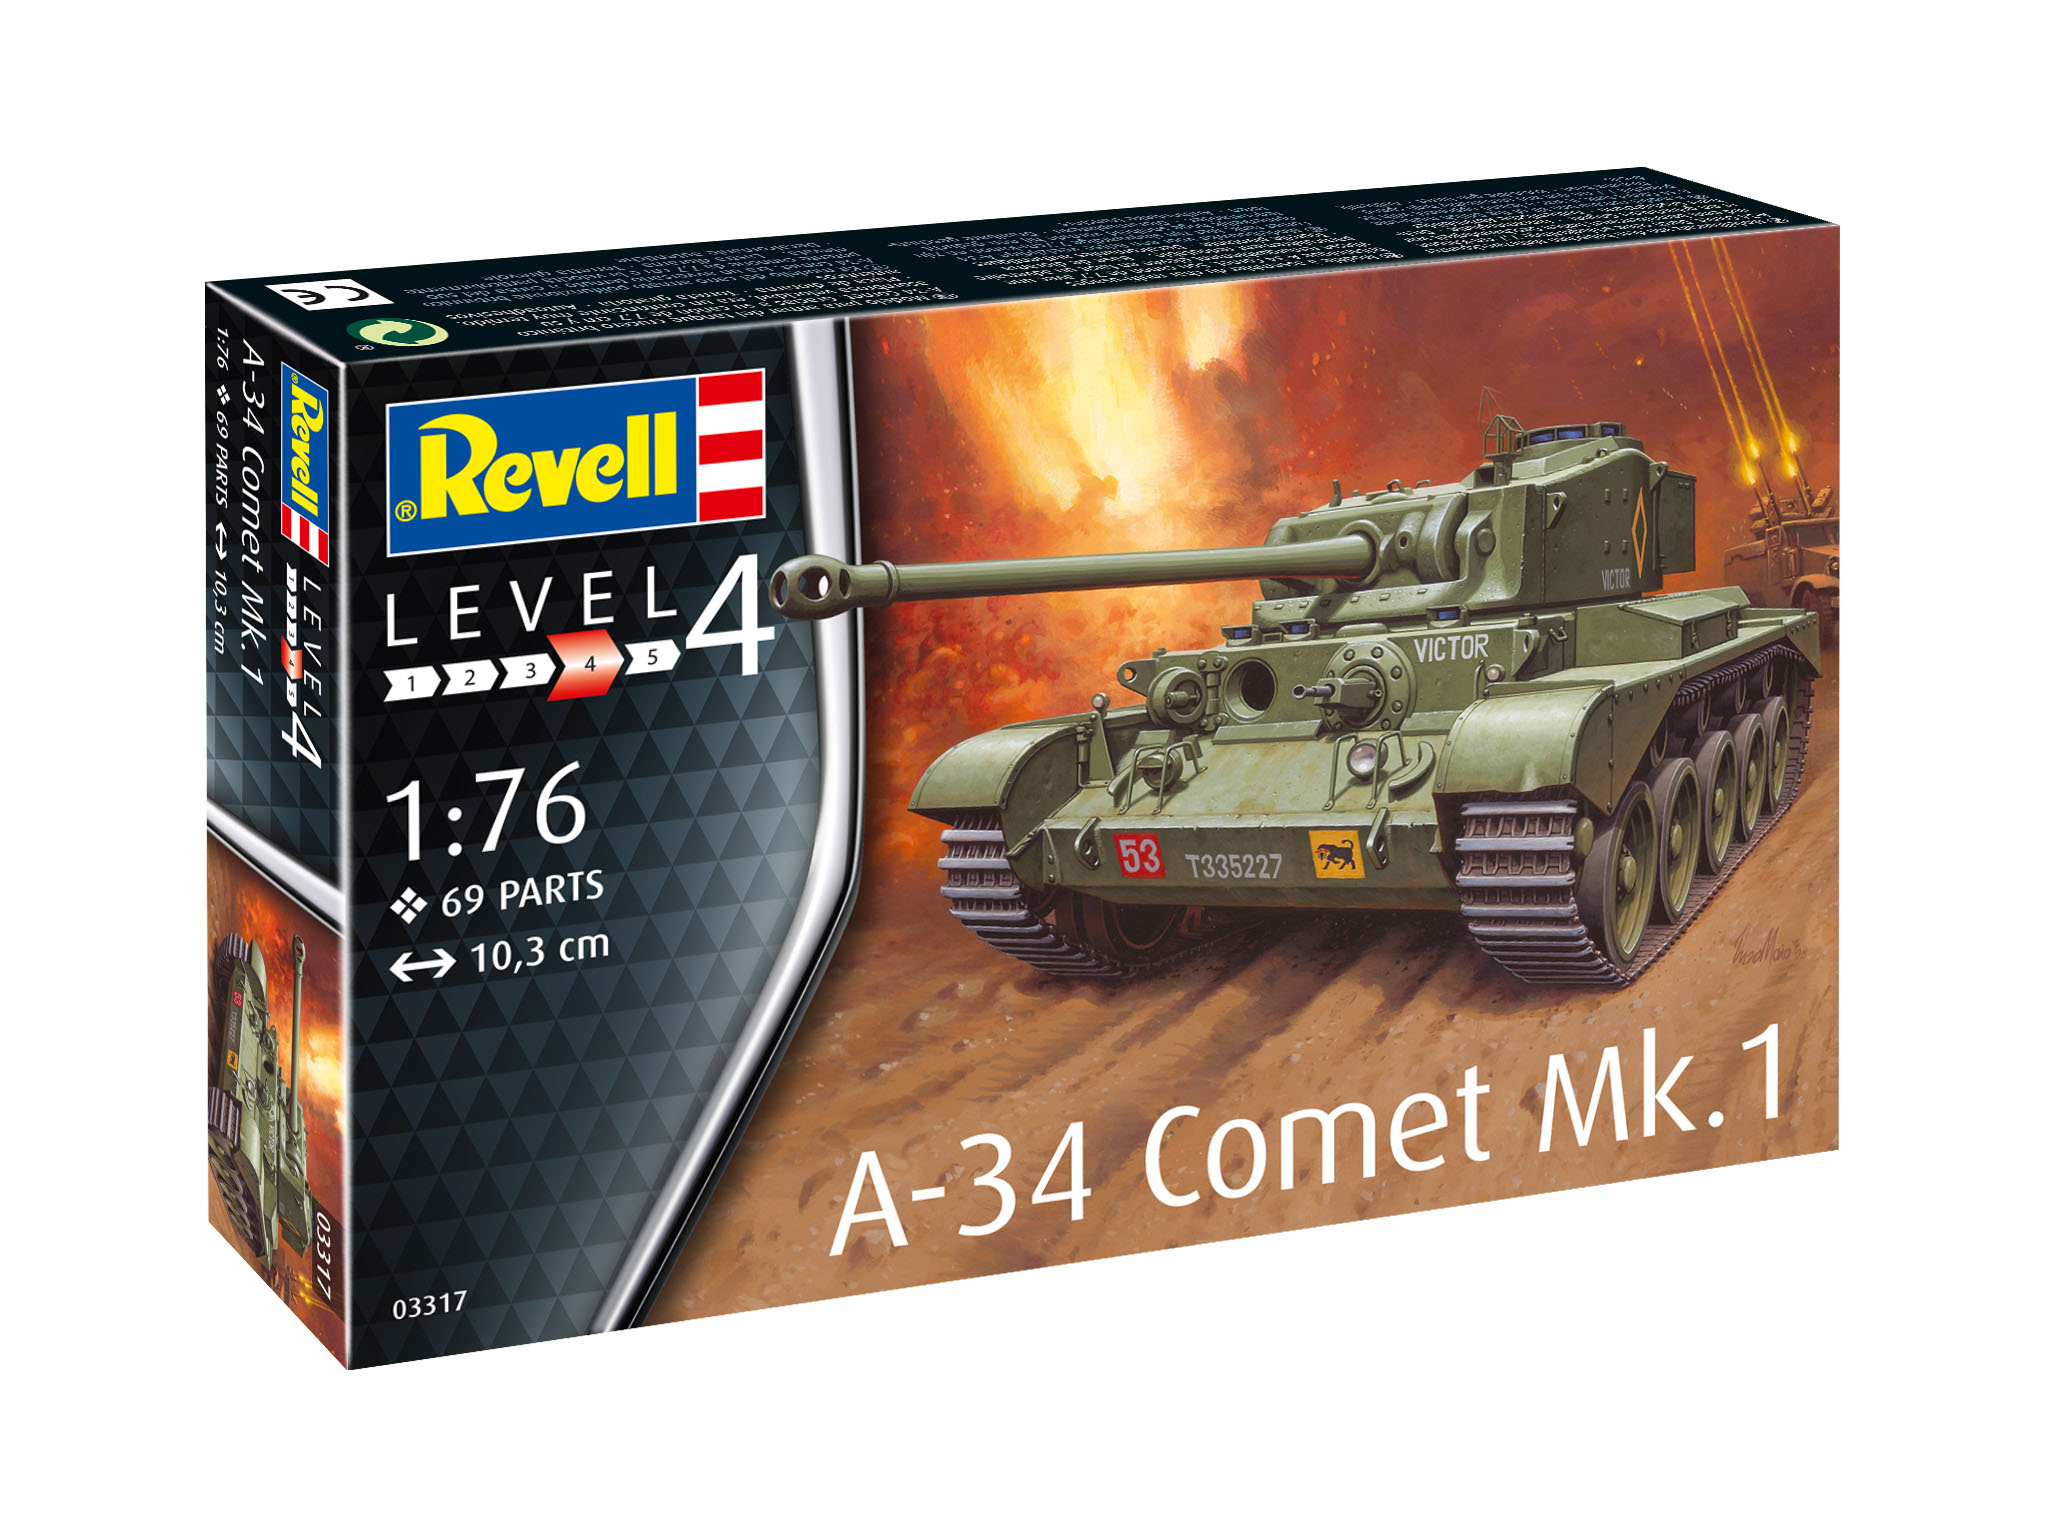 A-34 Comet Mk.1 - 03317